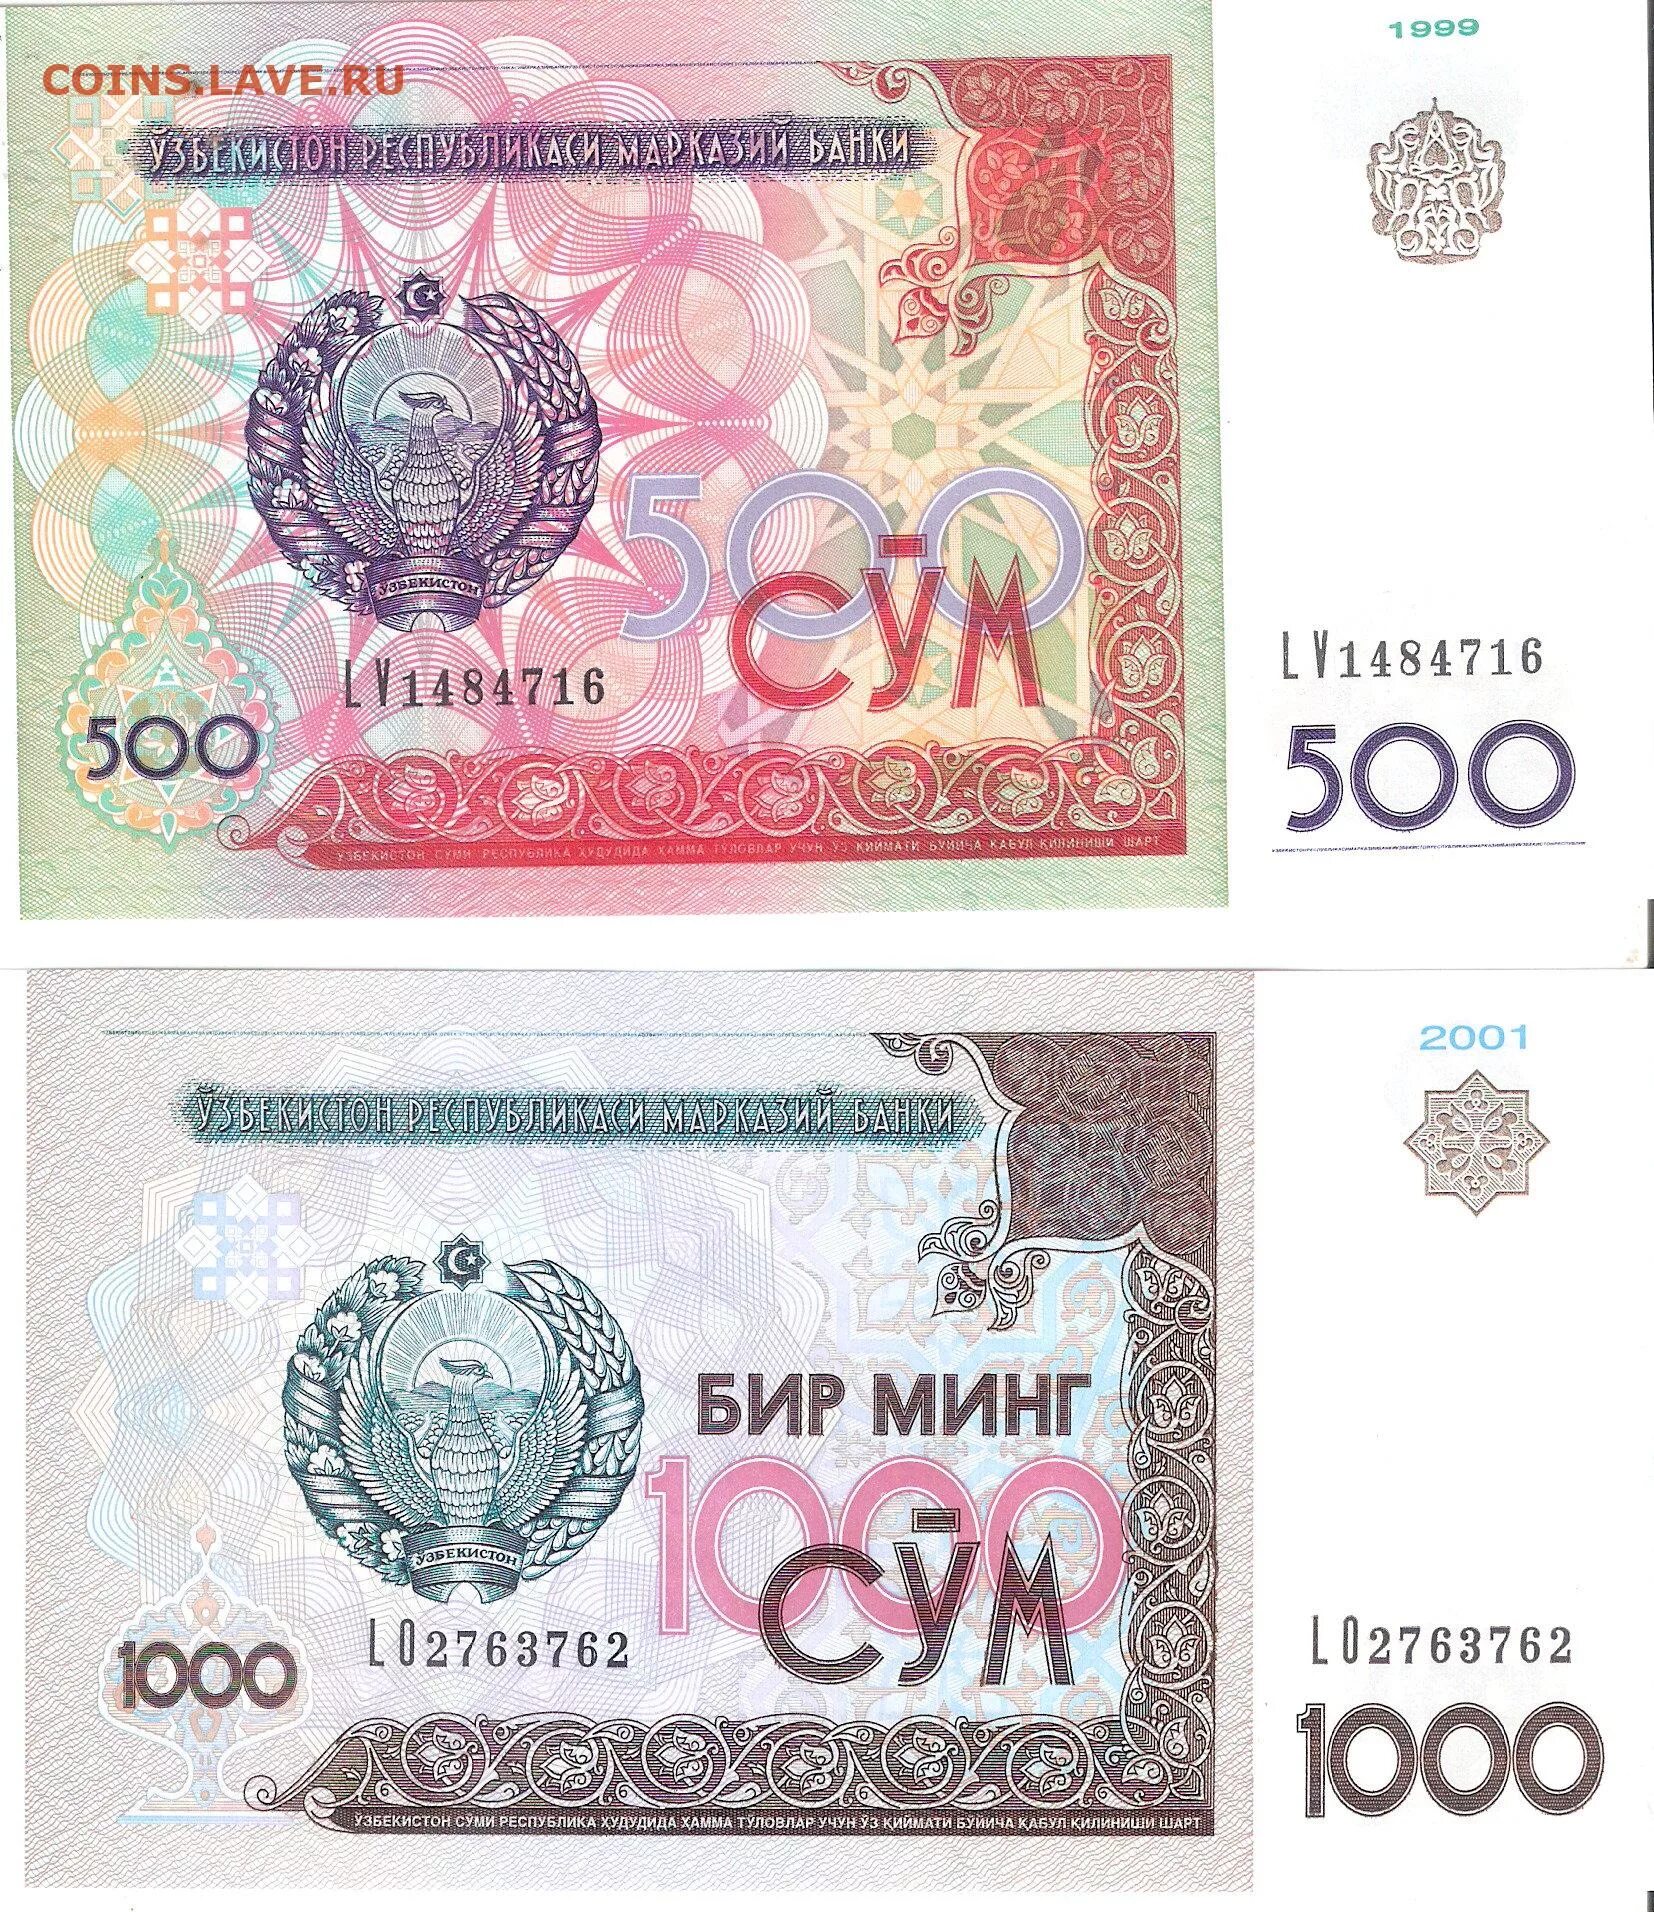 Узбекистан 1000 сколько. 500 Сўм. Узбекистан 500 сом 1999. Банкнота 500 сум Узбекистан. Узбекистан 1000 сум 2001.